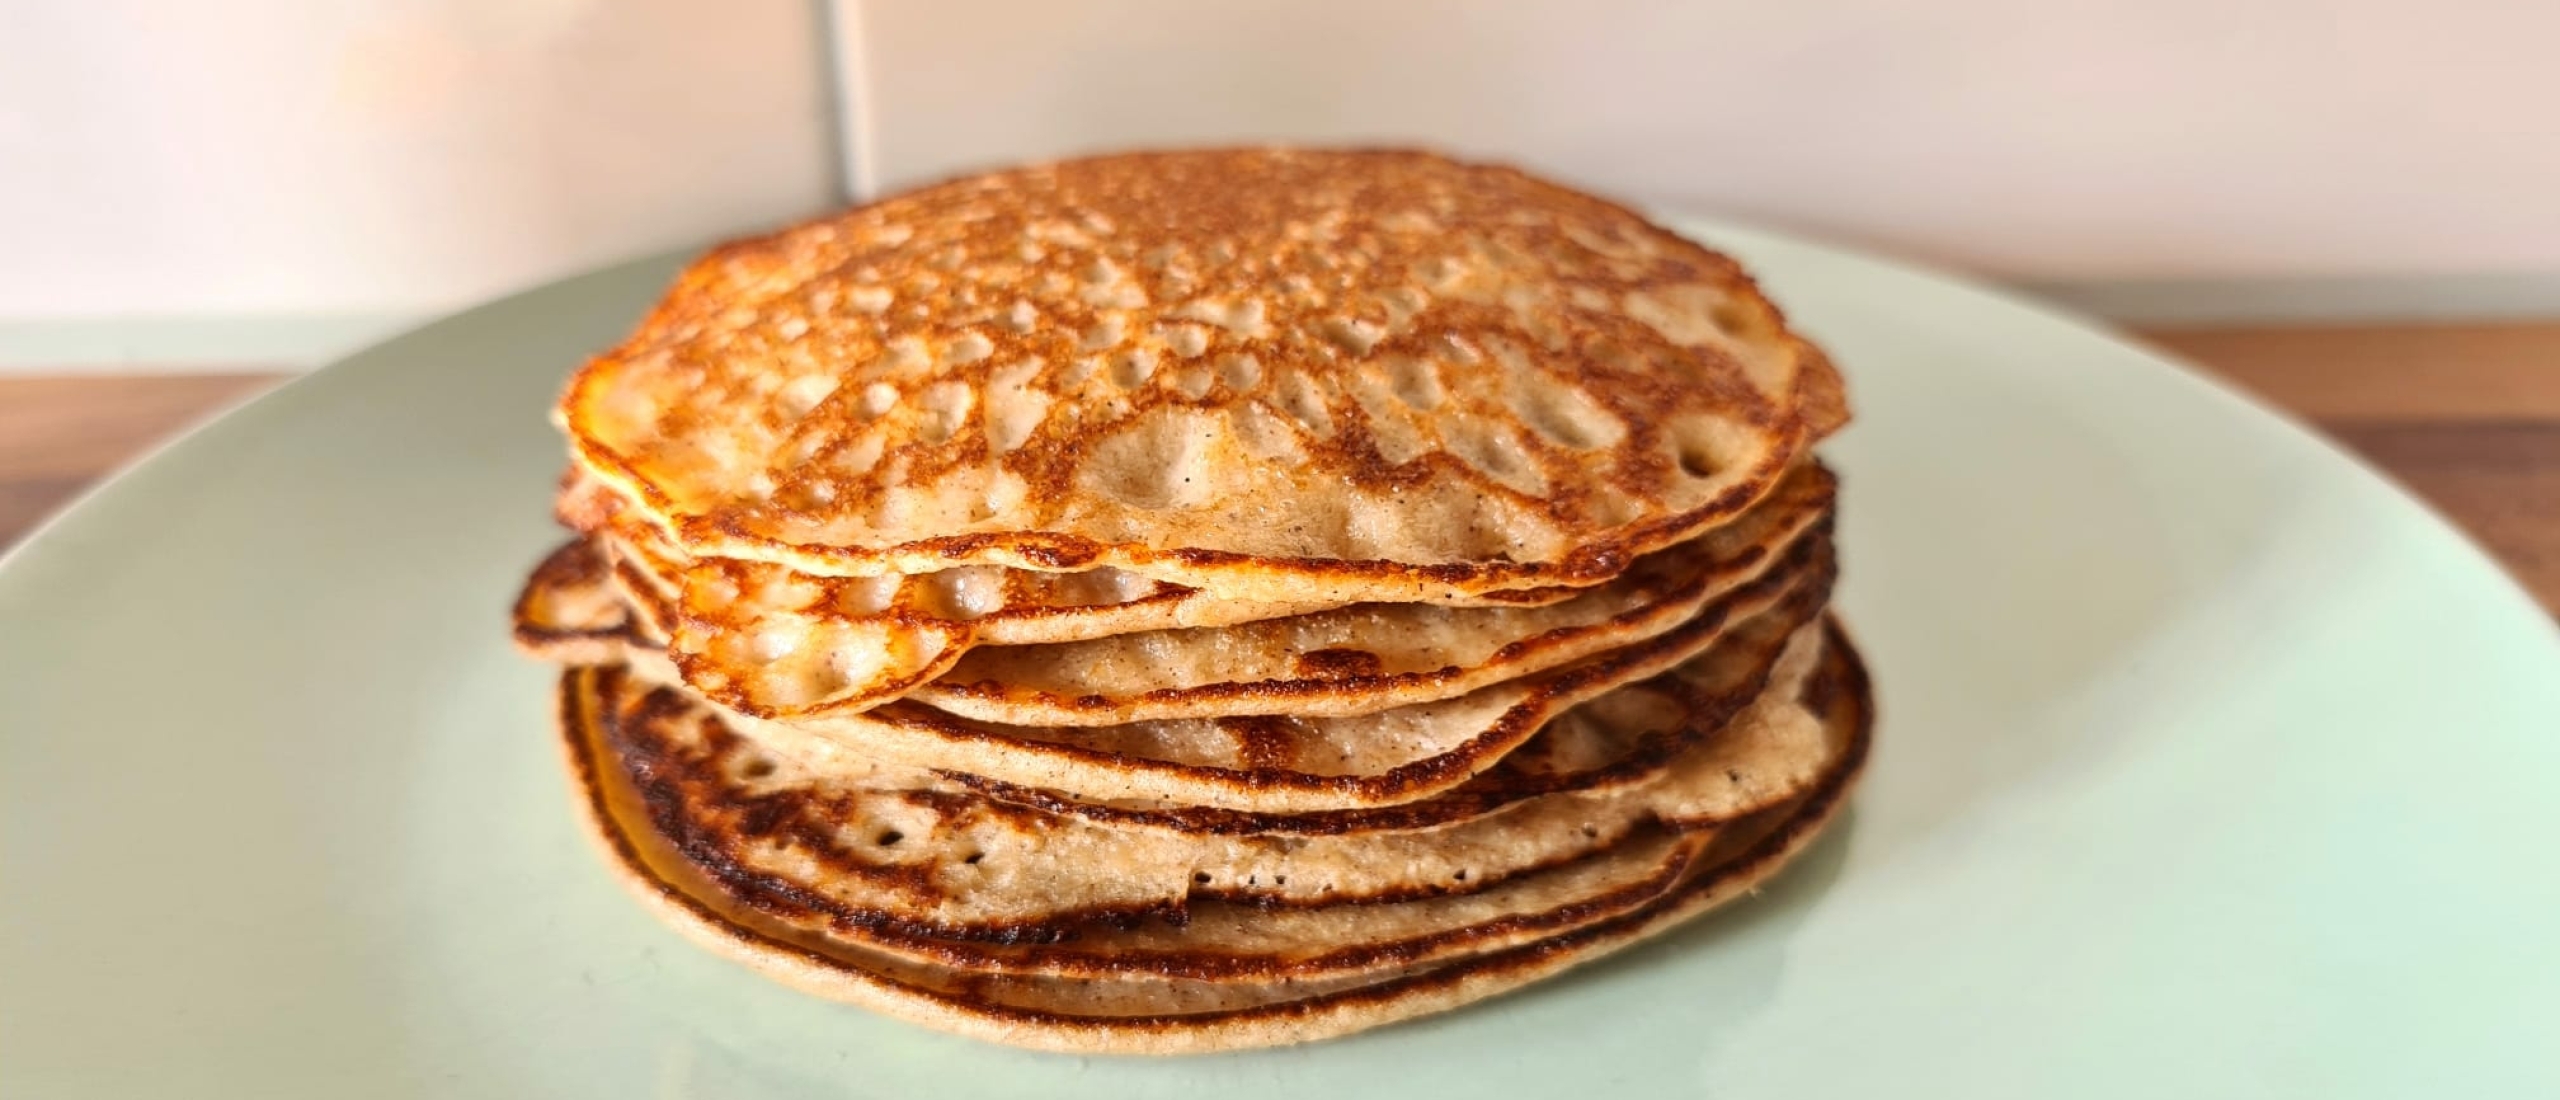 eiwitrijke havermout pancakes met cottage cheese huttenkase en kaneel recept recepten gezond aankomen eiwitrijk spiermassa opbouwen